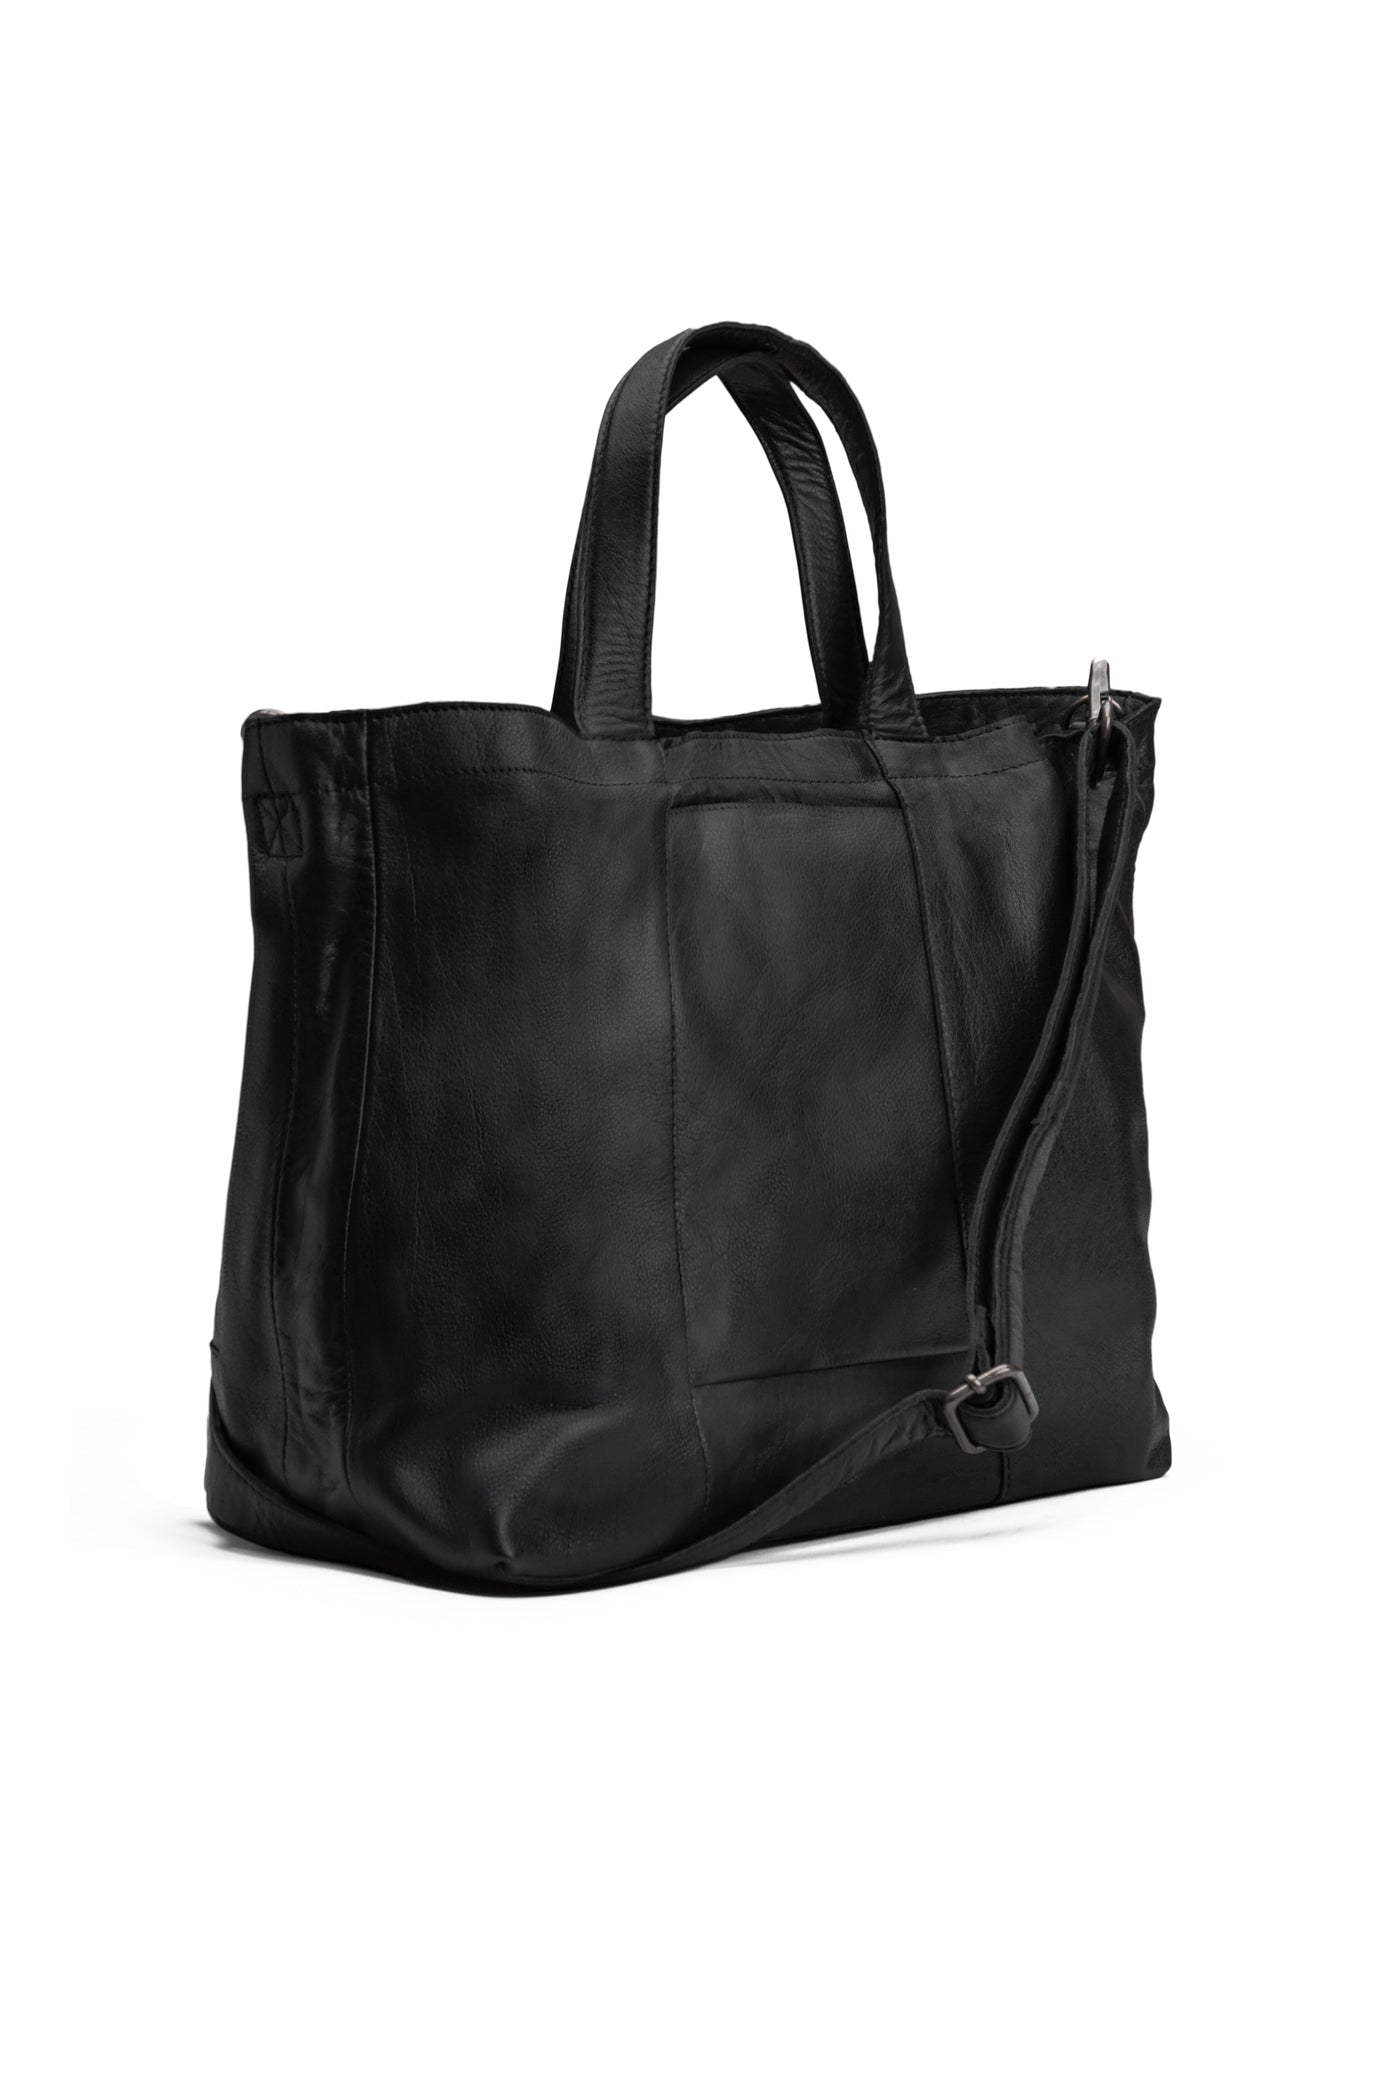 muud Hiba Project Bag Living Black